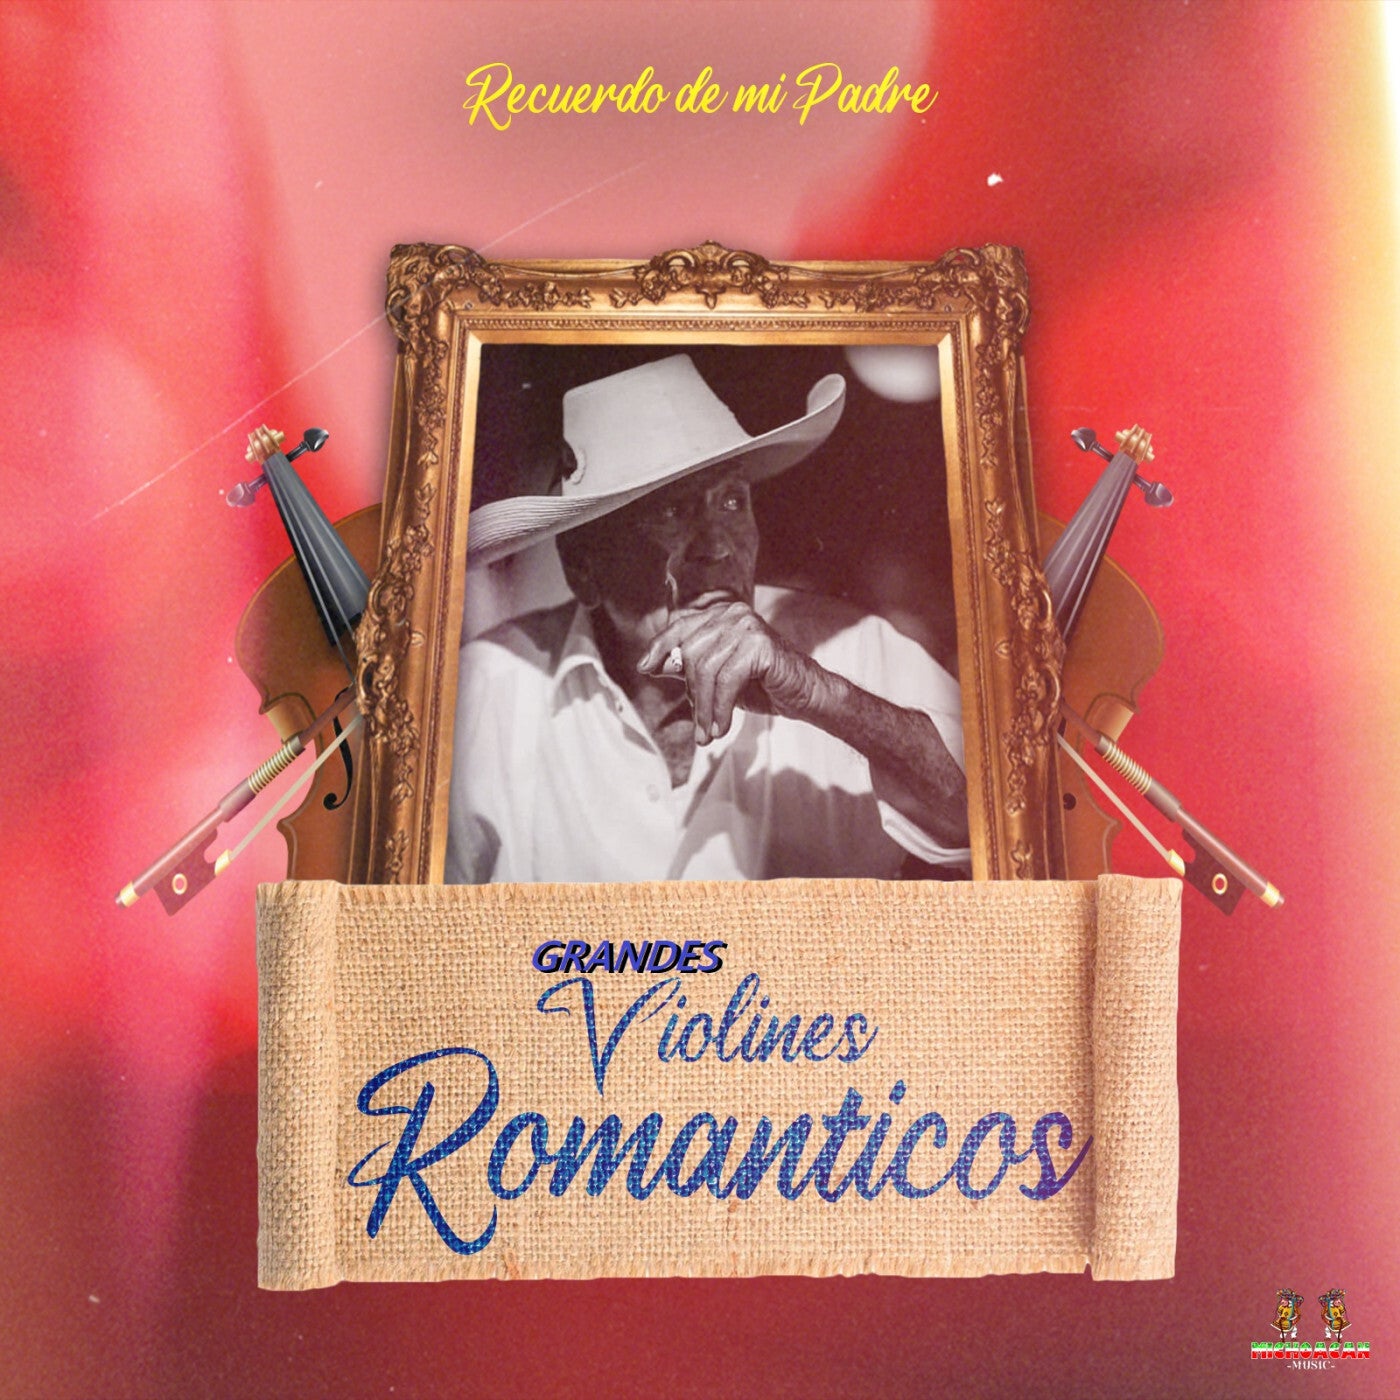 Recuerdo De Mi Padre by Grandes Violines Romanticos and Violines De Tierra  Caliente on Beatsource